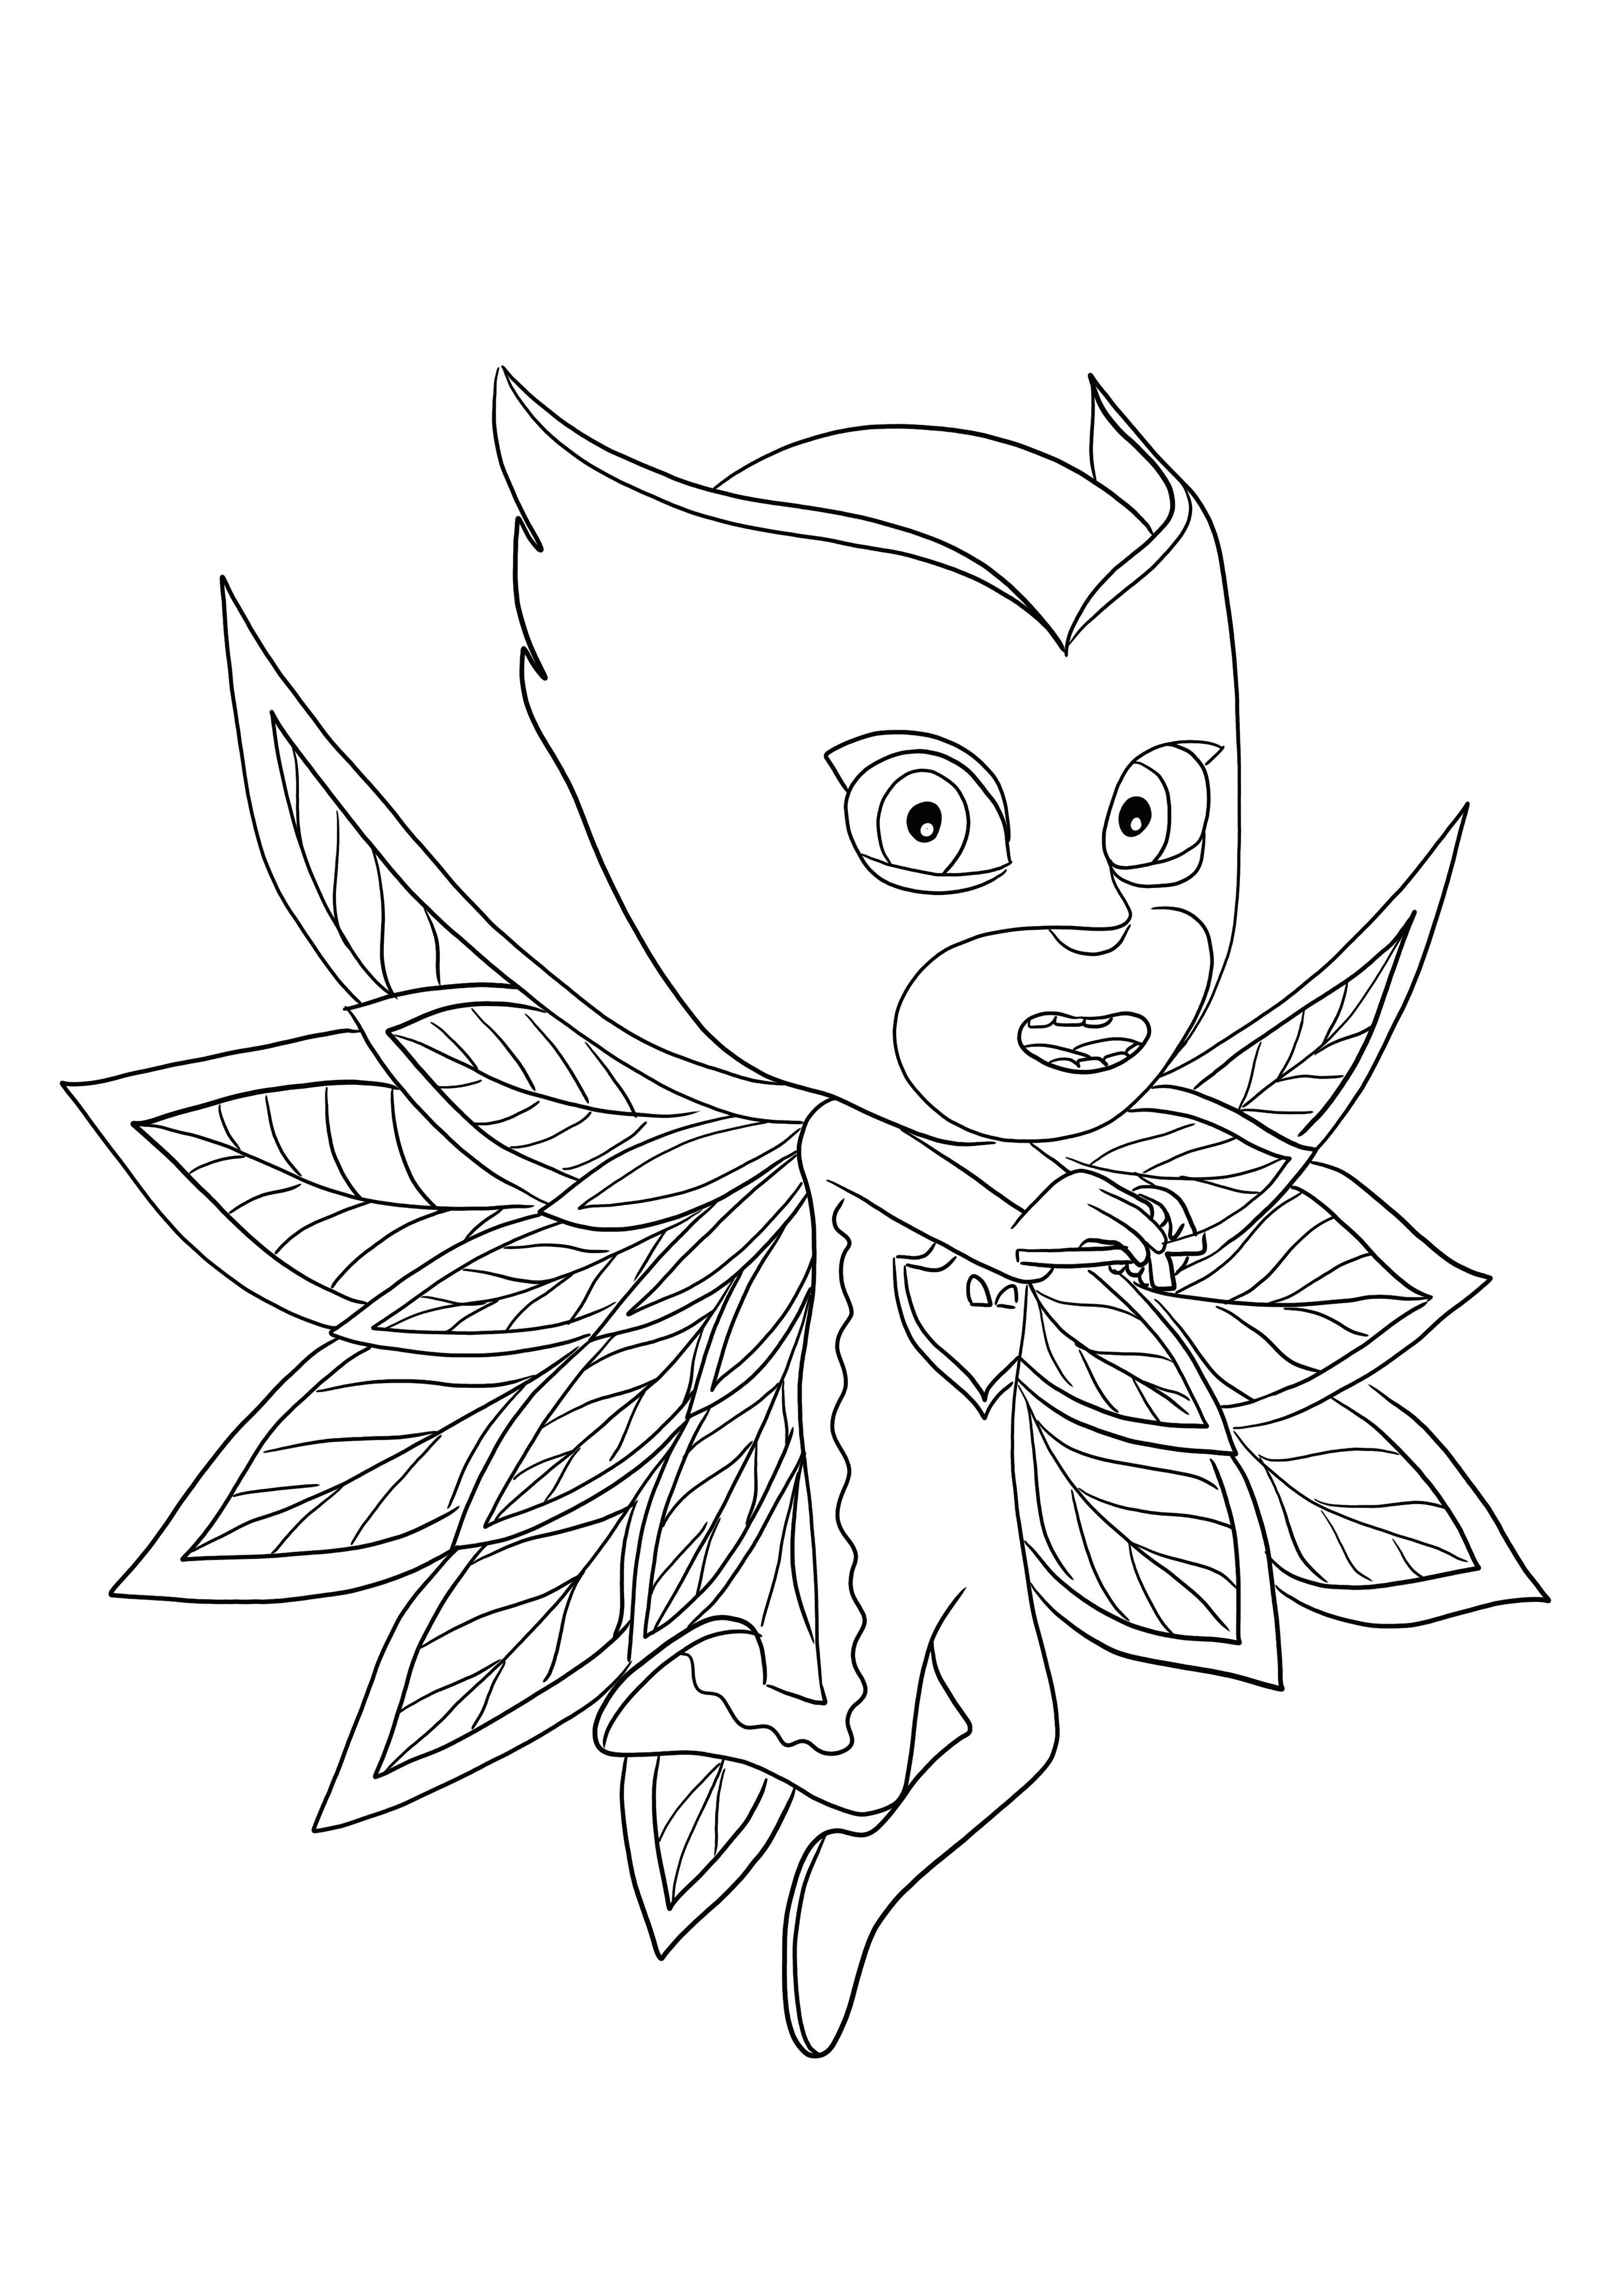 Bentuk Owlette PJ Masks mendapatkan kekuatannya jika dicetak dan diwarnai secara gratis